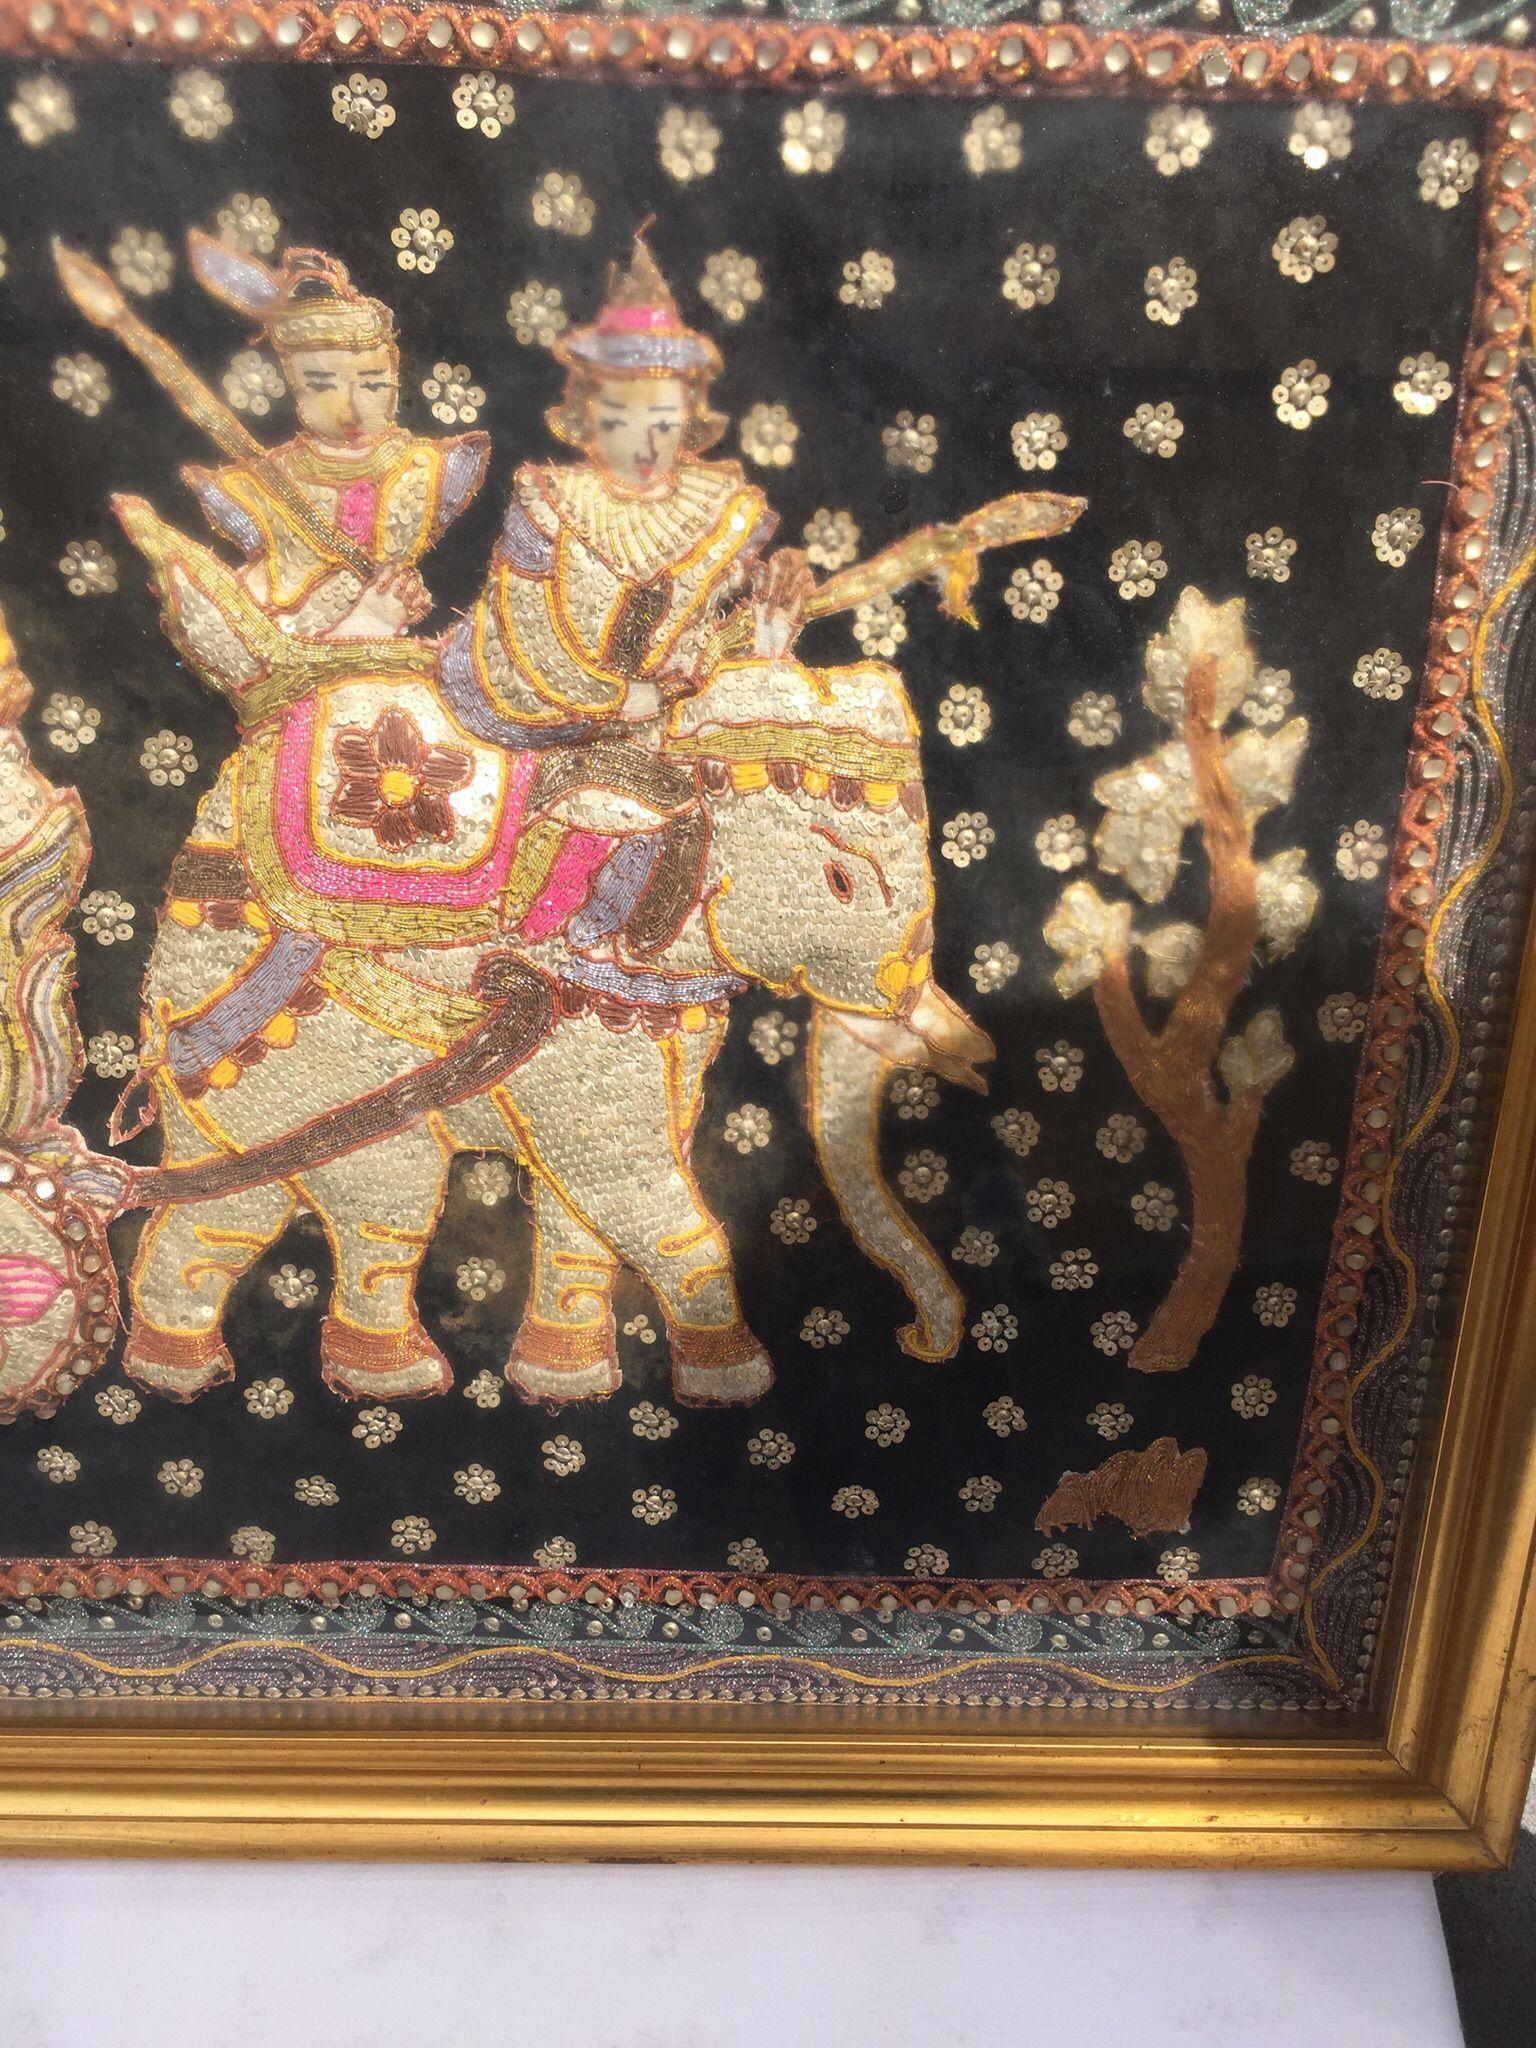 Incroyable, art décoratif indien Tapisserie de soie Libération de la famille royale.
Excellente composition, cette fantastique tapisserie en soie est encadrée dans un cadre en bois doré, voir photo au dos. Les dimensions se réfèrent à la tapisserie